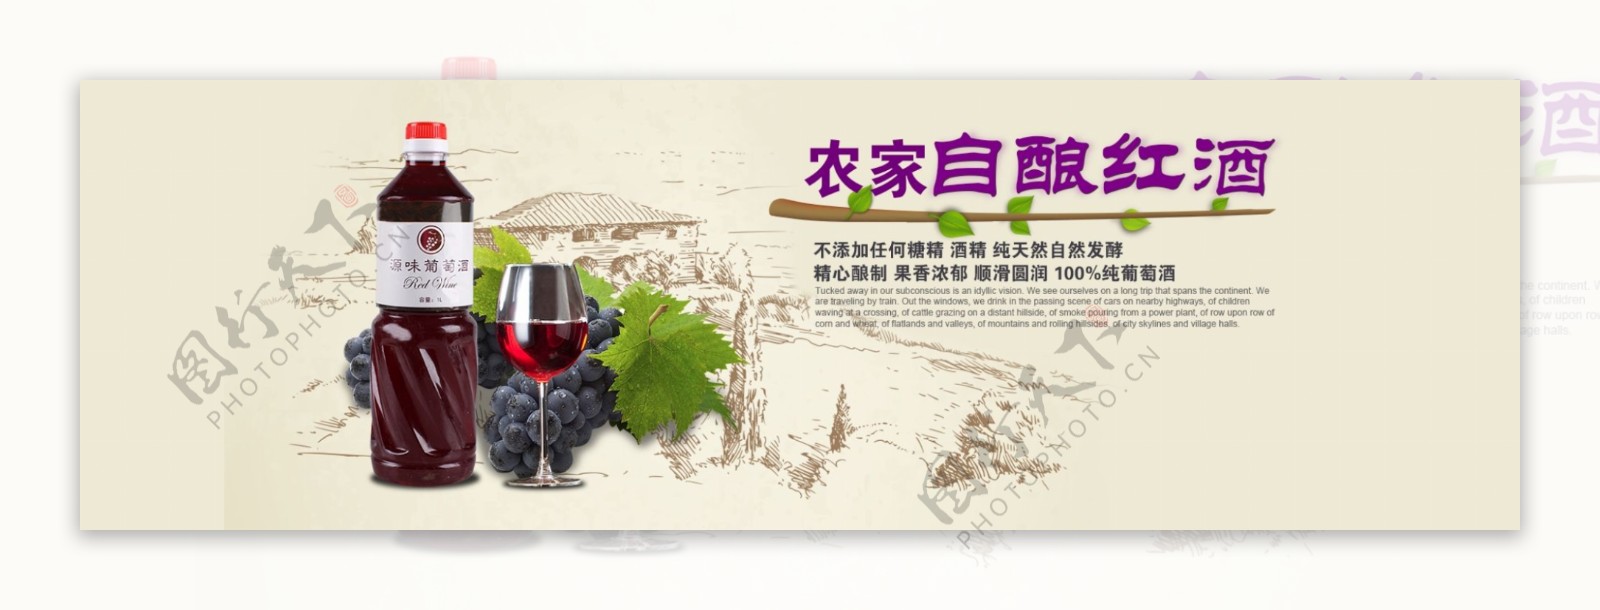 淘宝农家自酿红酒促销海报设计PSD素材